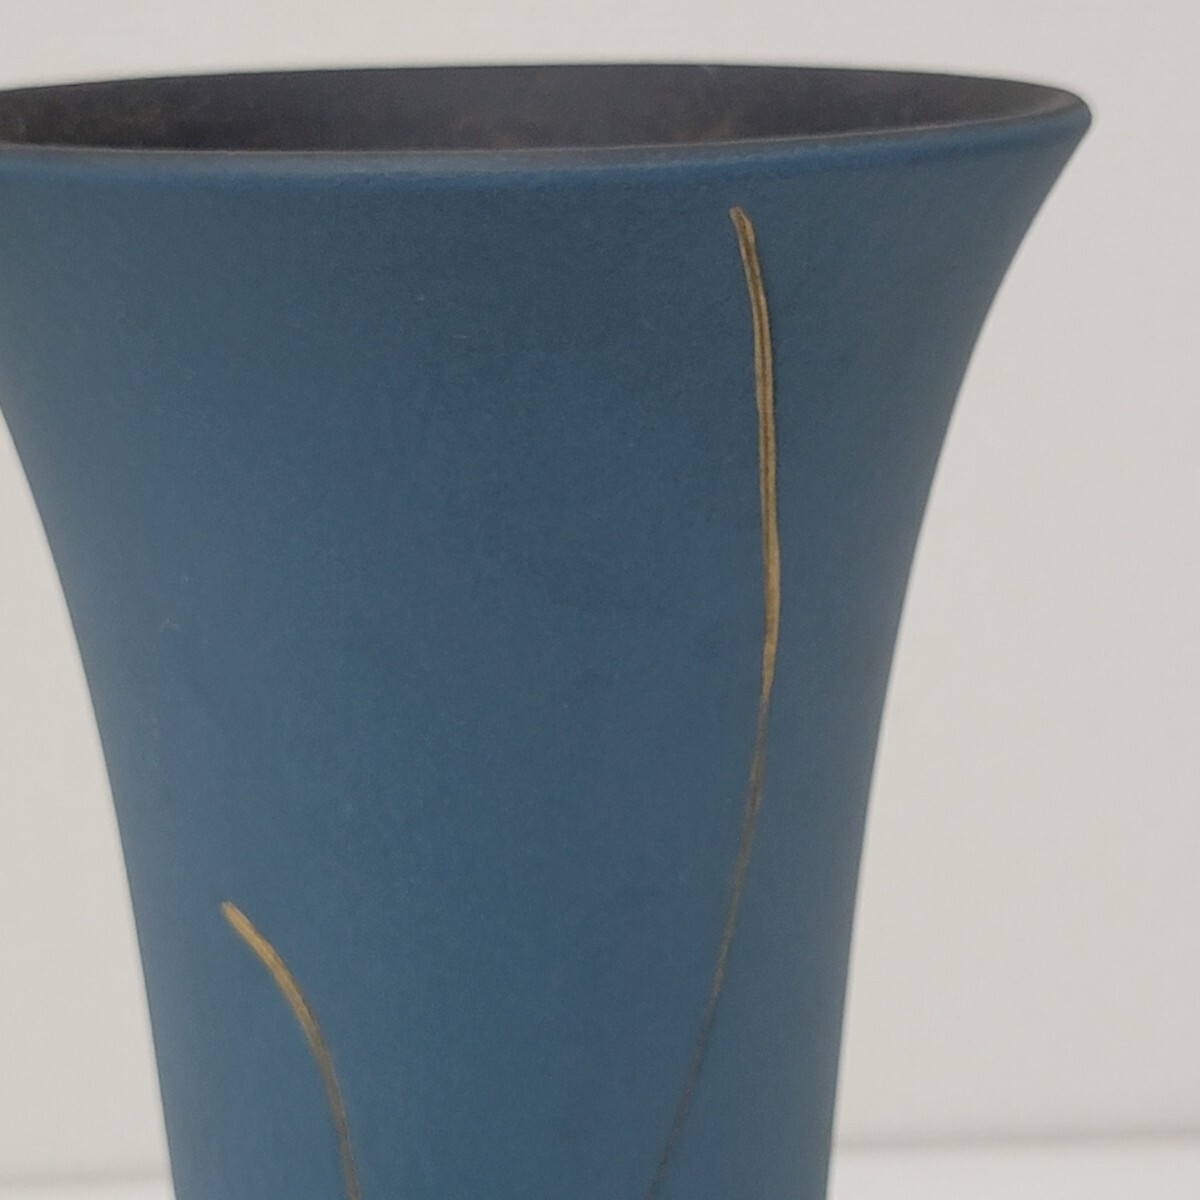 小林正明 作 いけばな 池坊 作家陶器 華道師範所蔵品 Japanese Vintage Style Flower Vase 和モダン デザイン フラワーベース 花瓶 花器 07の画像7